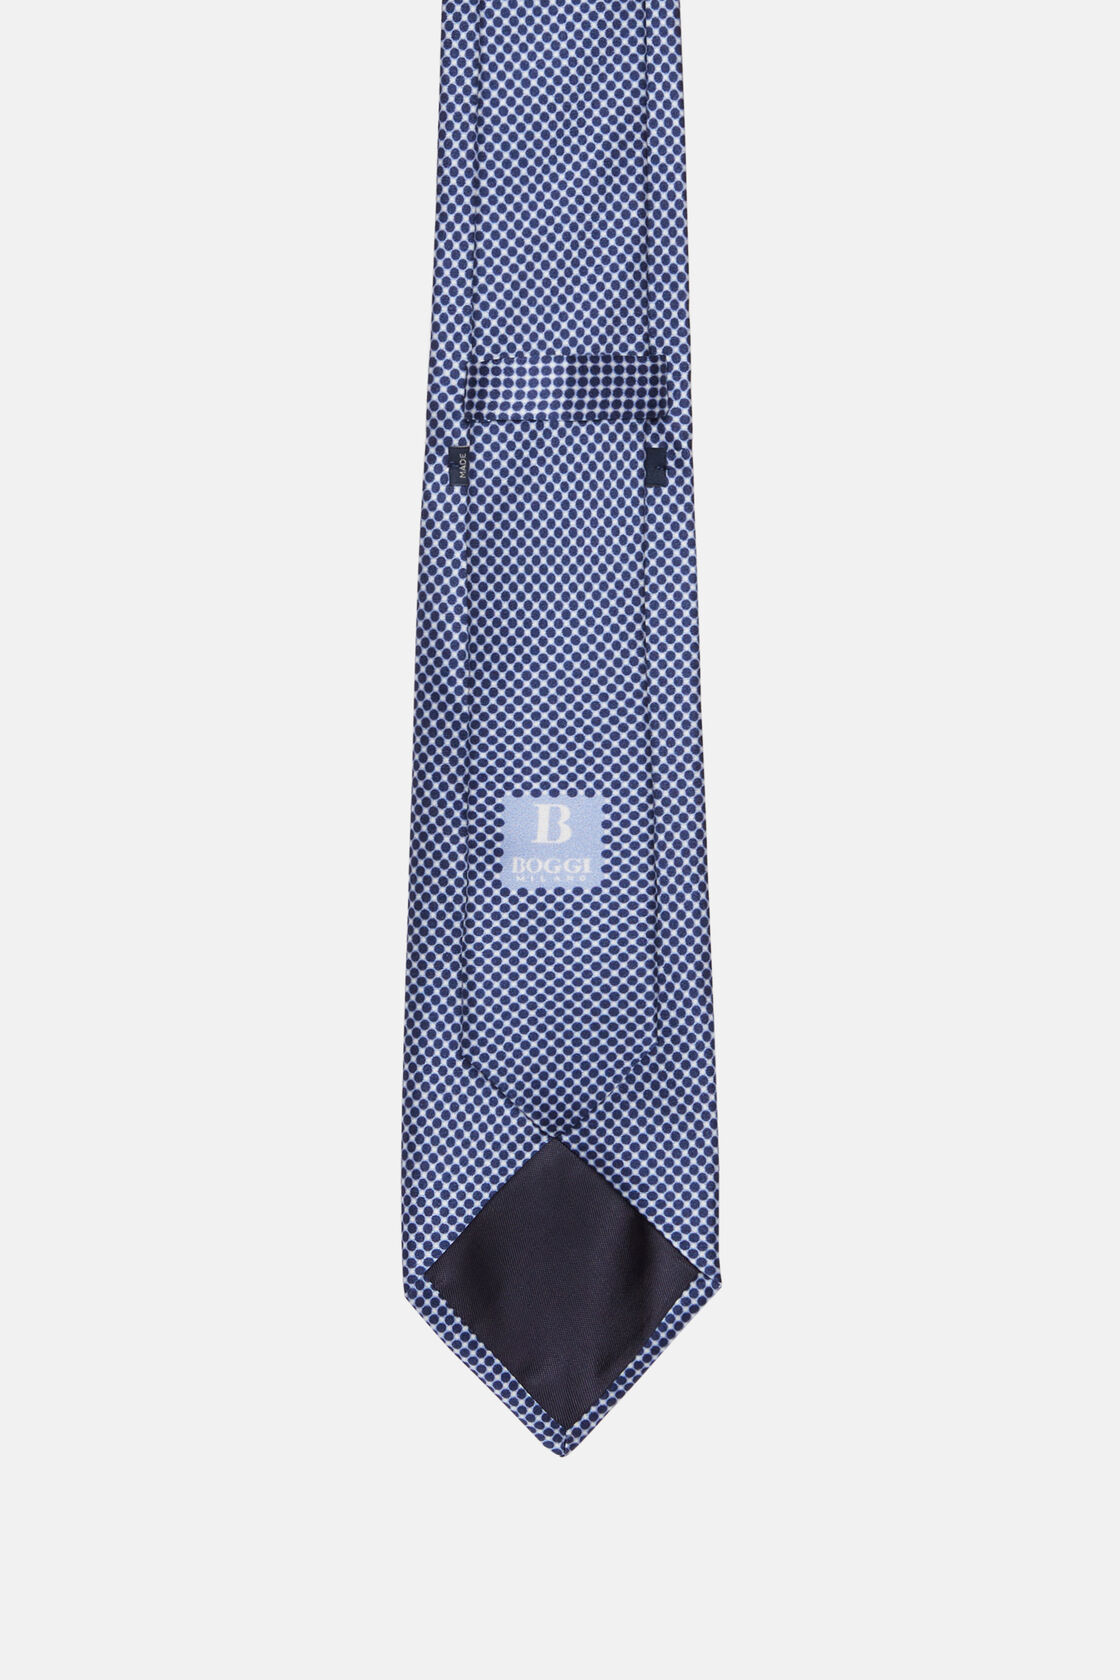 Bedrukte zijden ceremoniële stropdas, Navy blue, hi-res